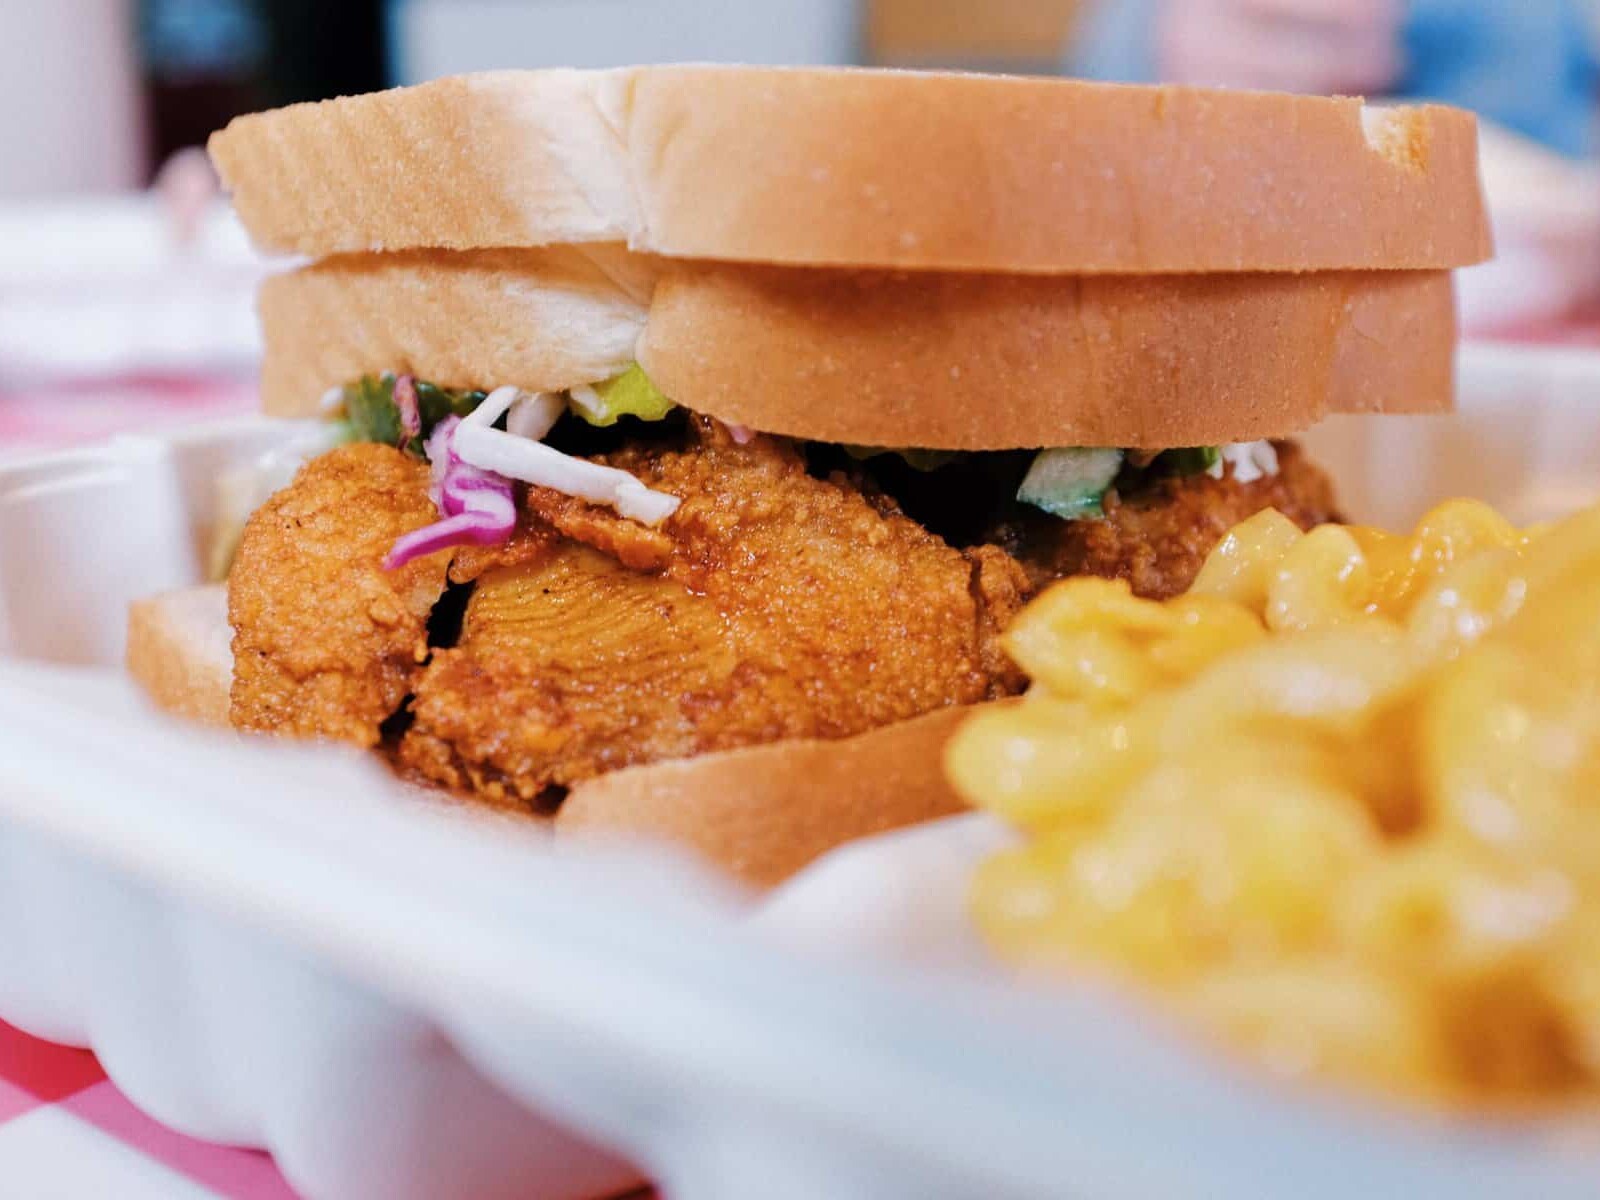 A sandwich from Nashville's Famous Hattie B's Chicken restaurant